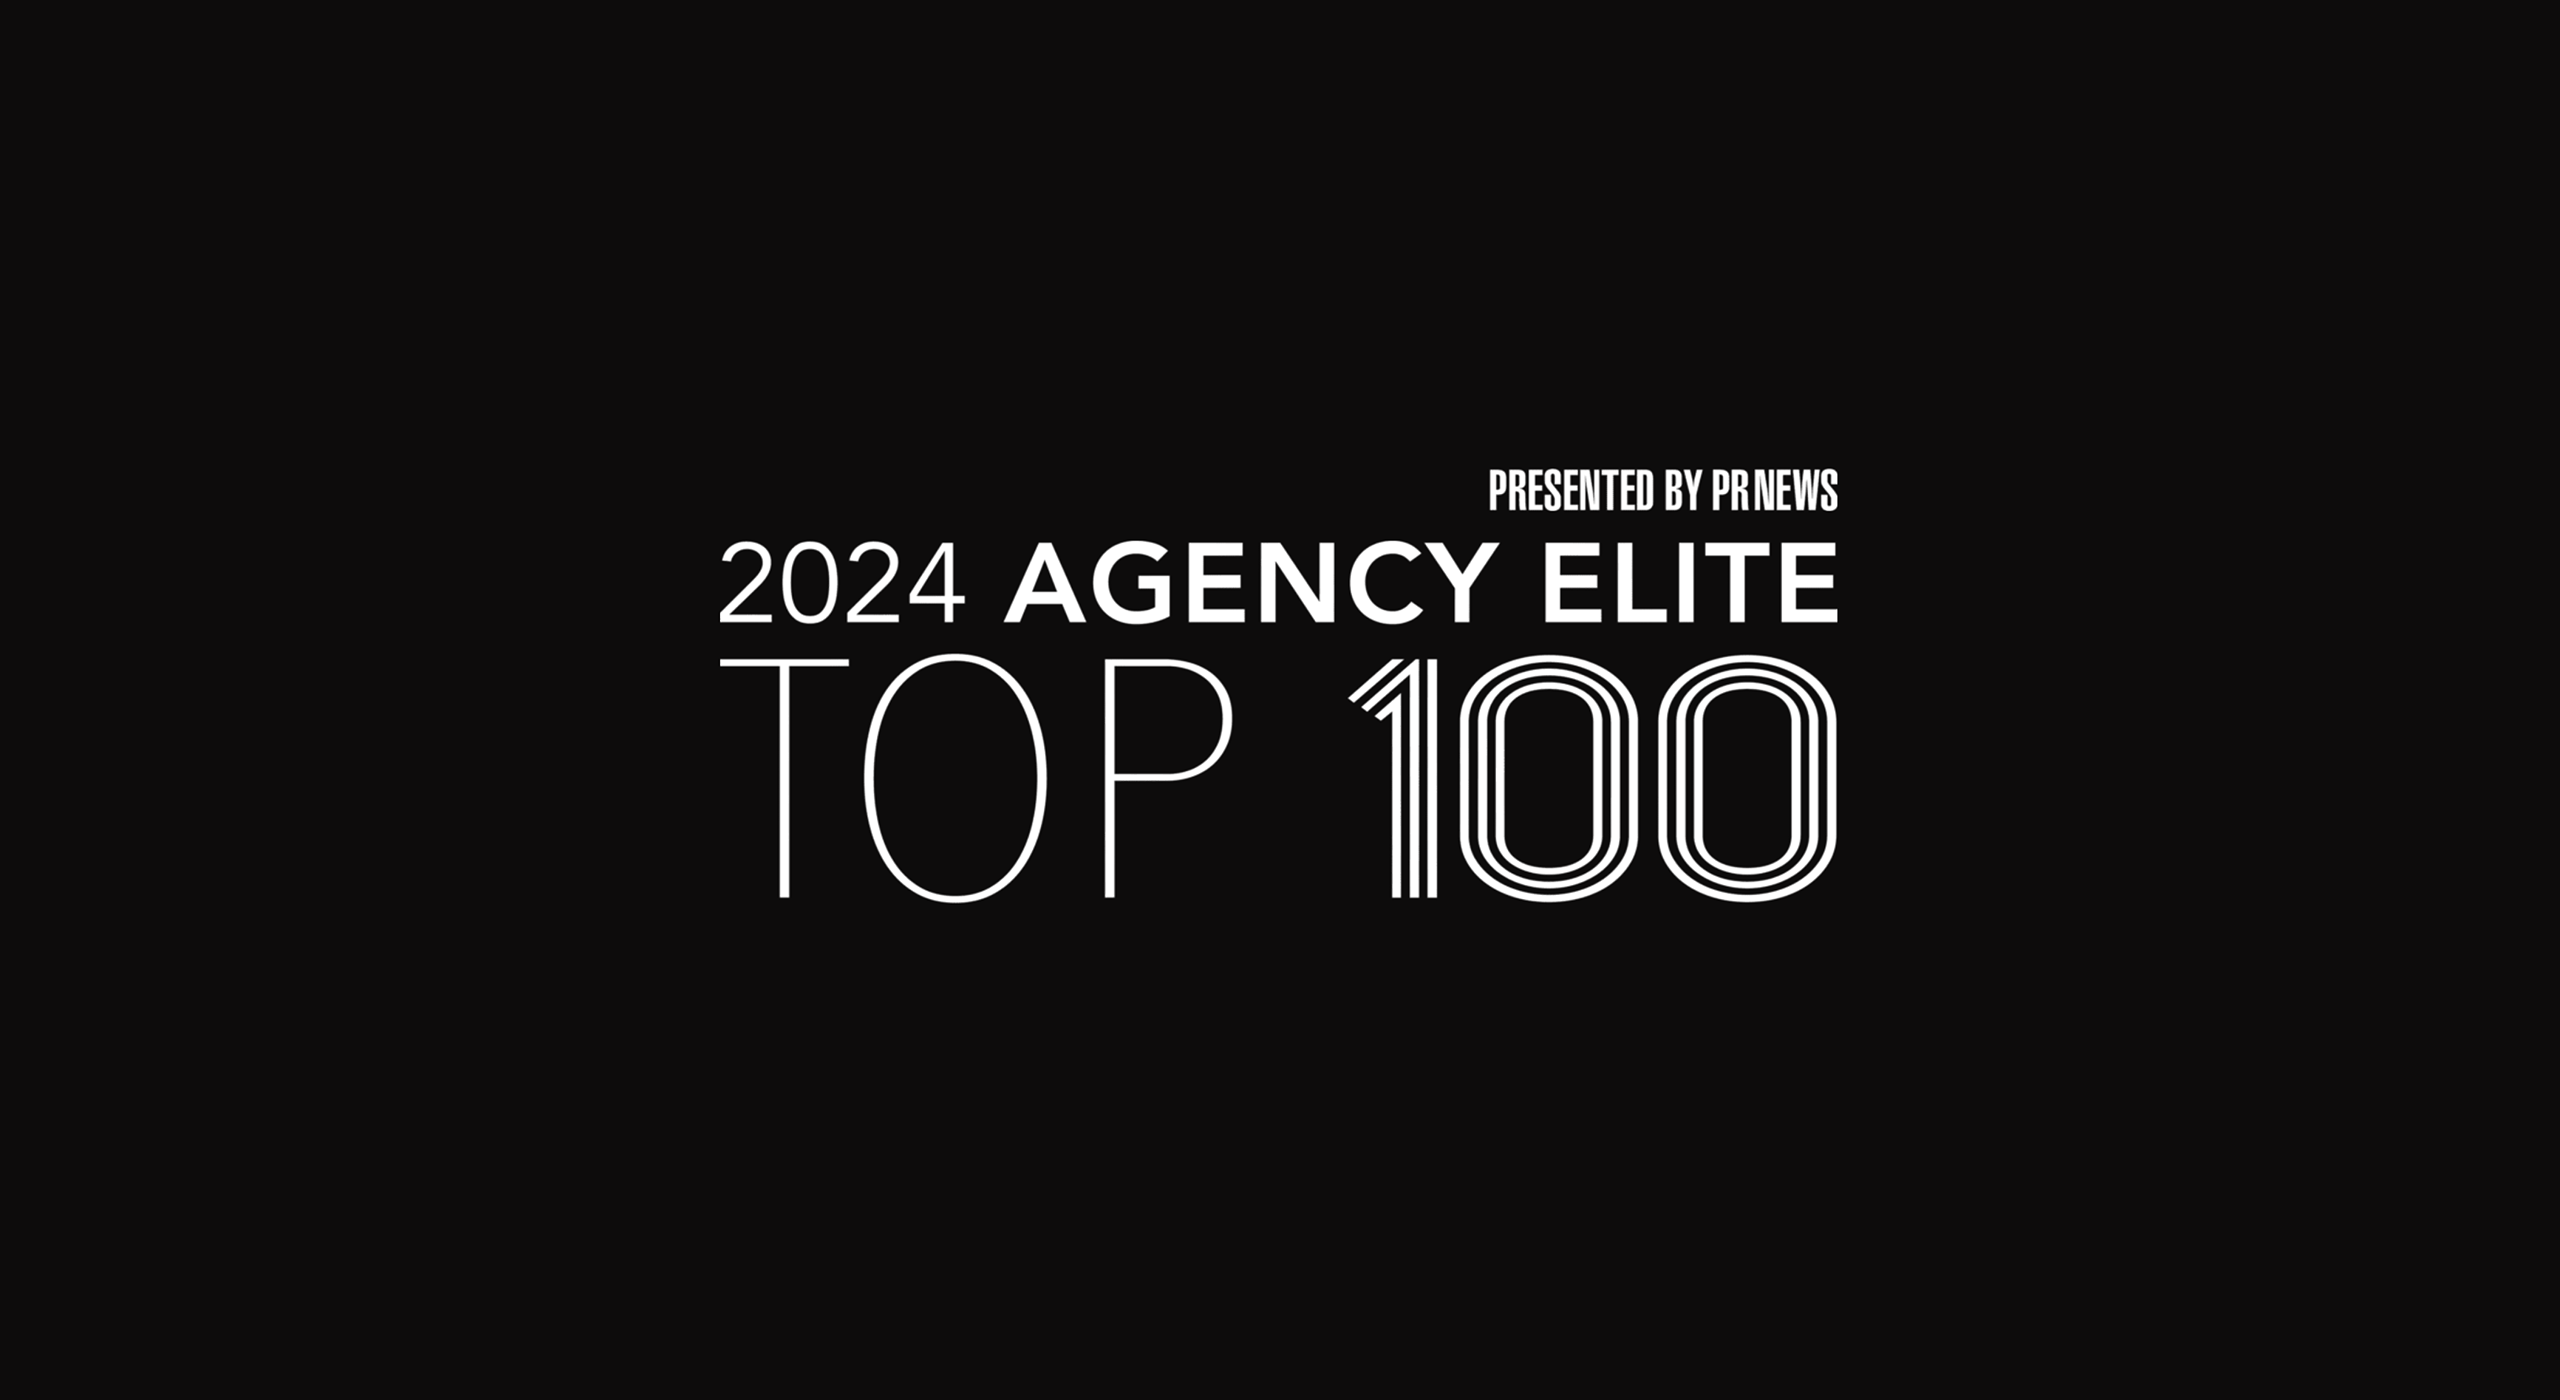 Agency elite top 100